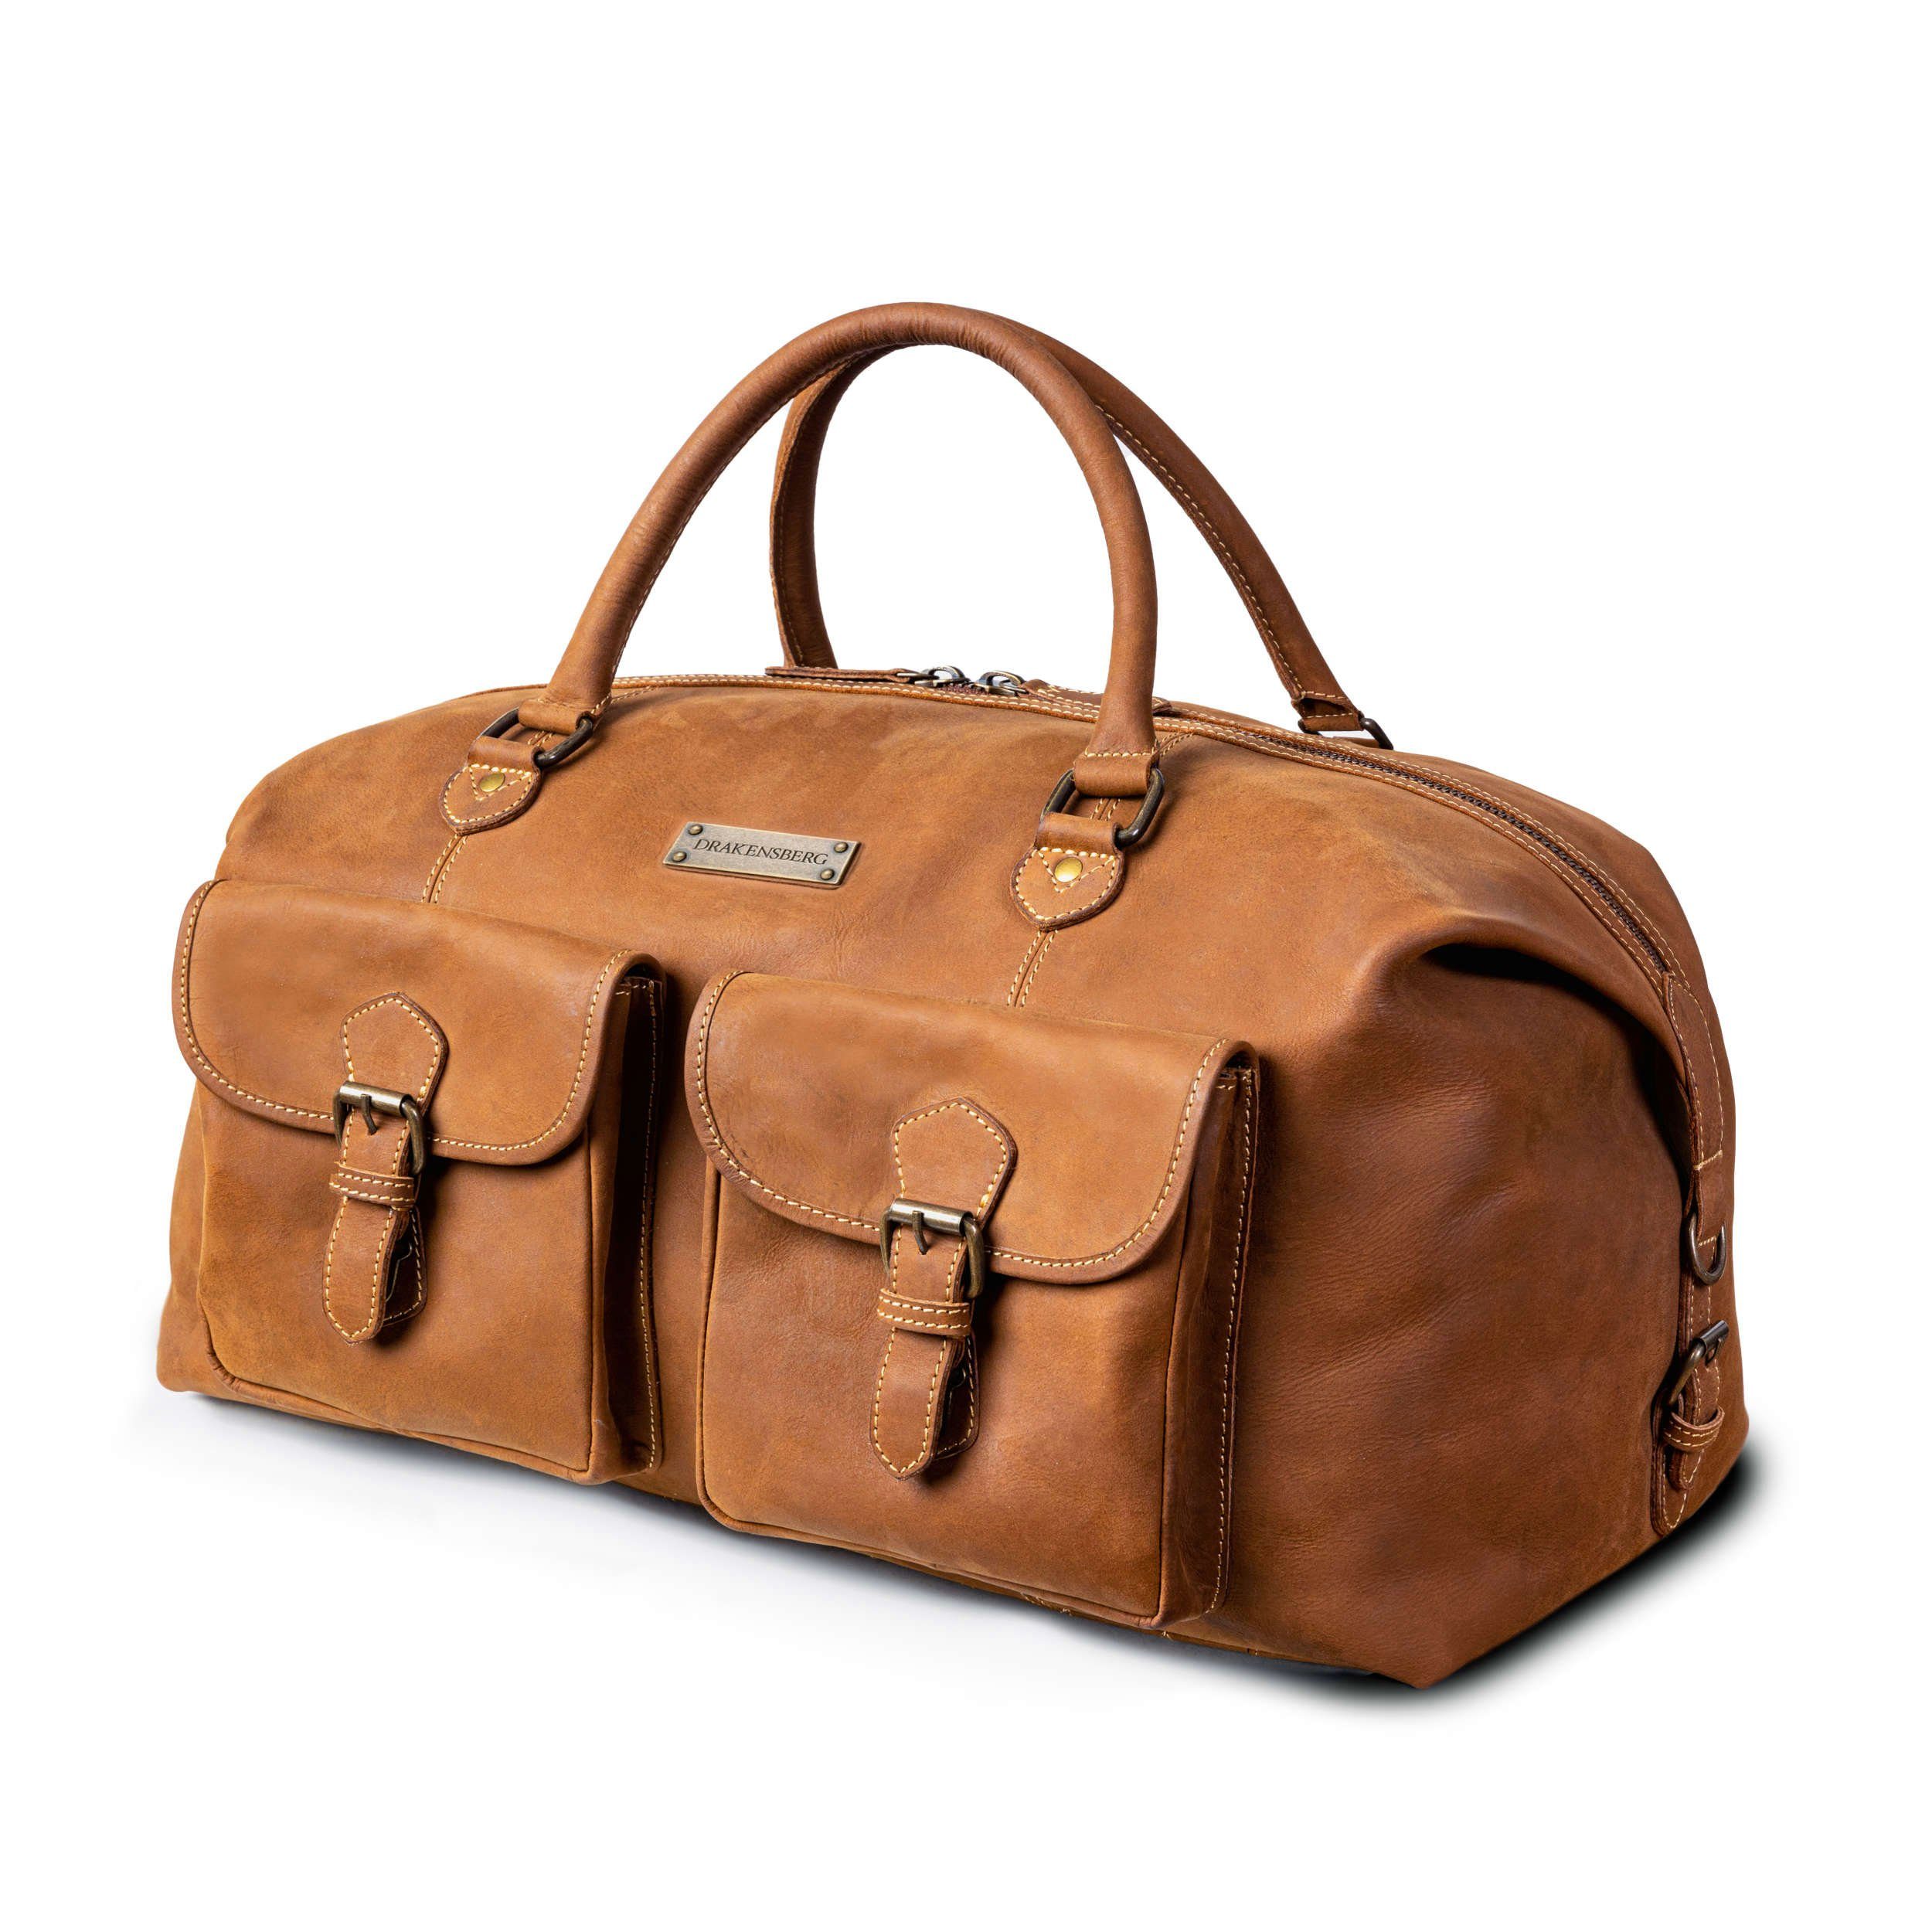 DRAKENSBERG Reisetasche Weekender "Ray" Cognac-Braun, Reisetasche im Safari-Look,  handgemacht aus hochwertigen Büffelleder